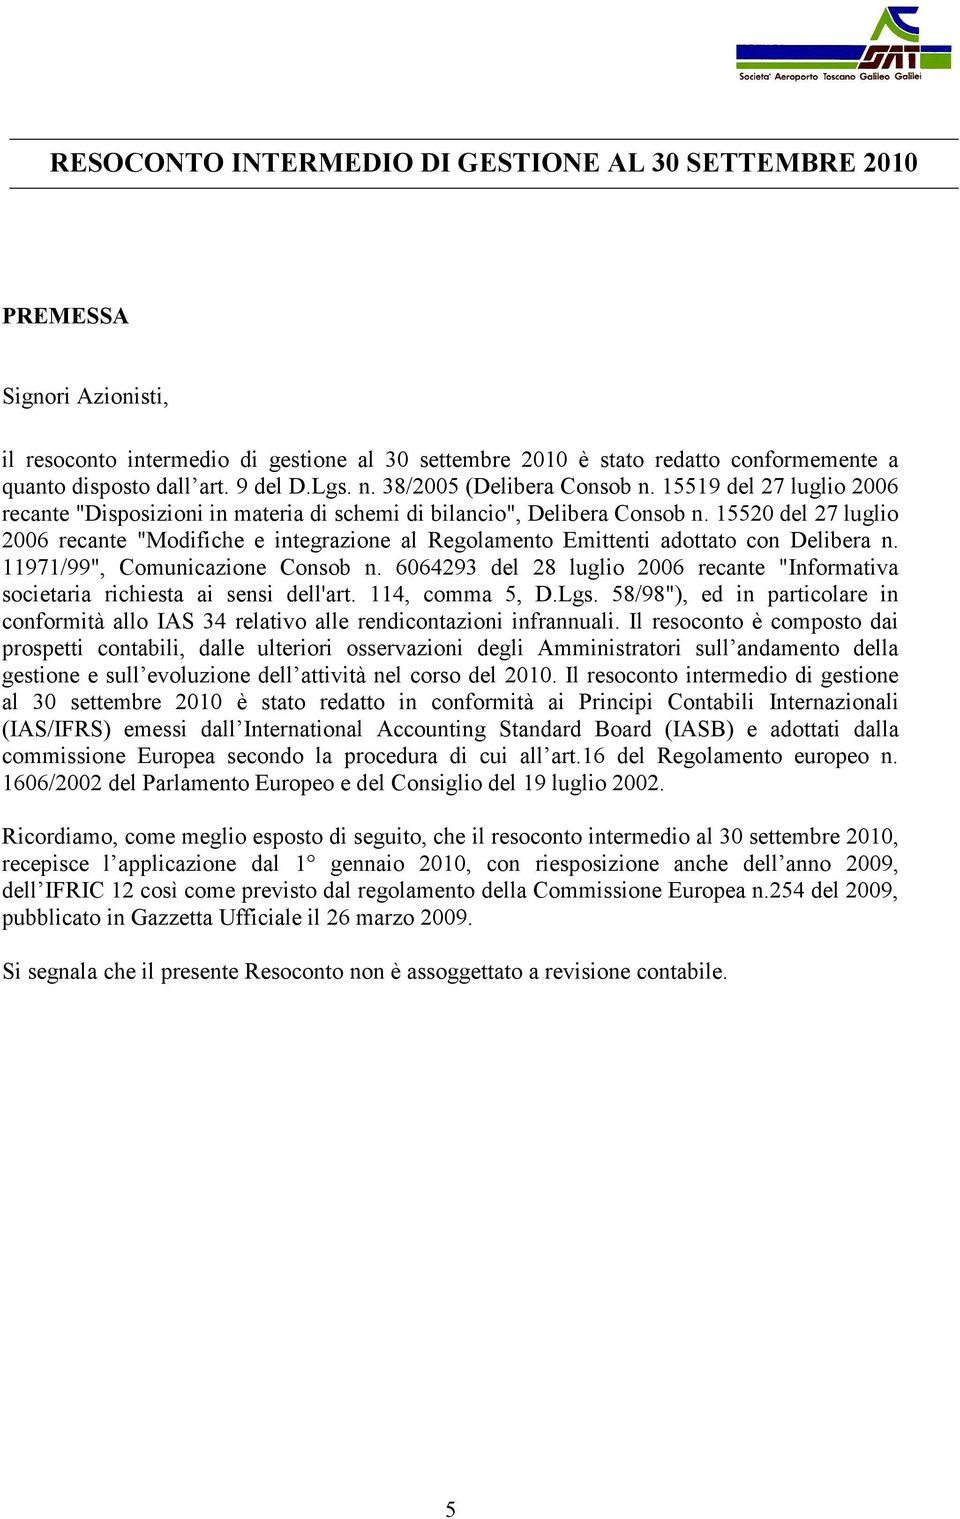 15520 del 27 luglio 2006 recante "Modifiche e integrazione al Regolamento Emittenti adottato con Delibera n. 11971/99", Comunicazione Consob n.